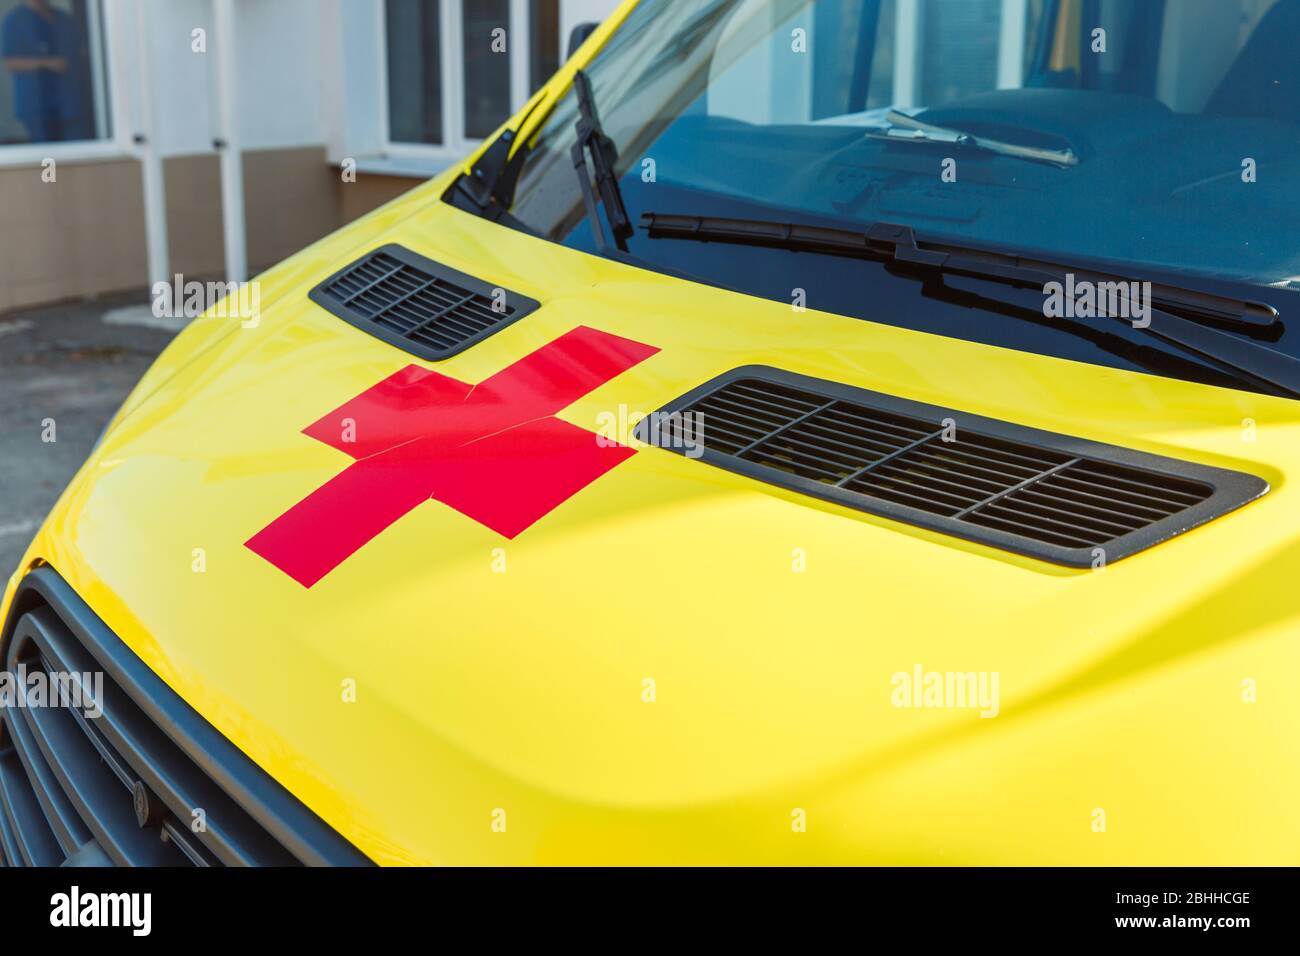 La croce rossa sul cappuccio giallo del concetto di ambulanza.Medicina e sanità. Foto Stock